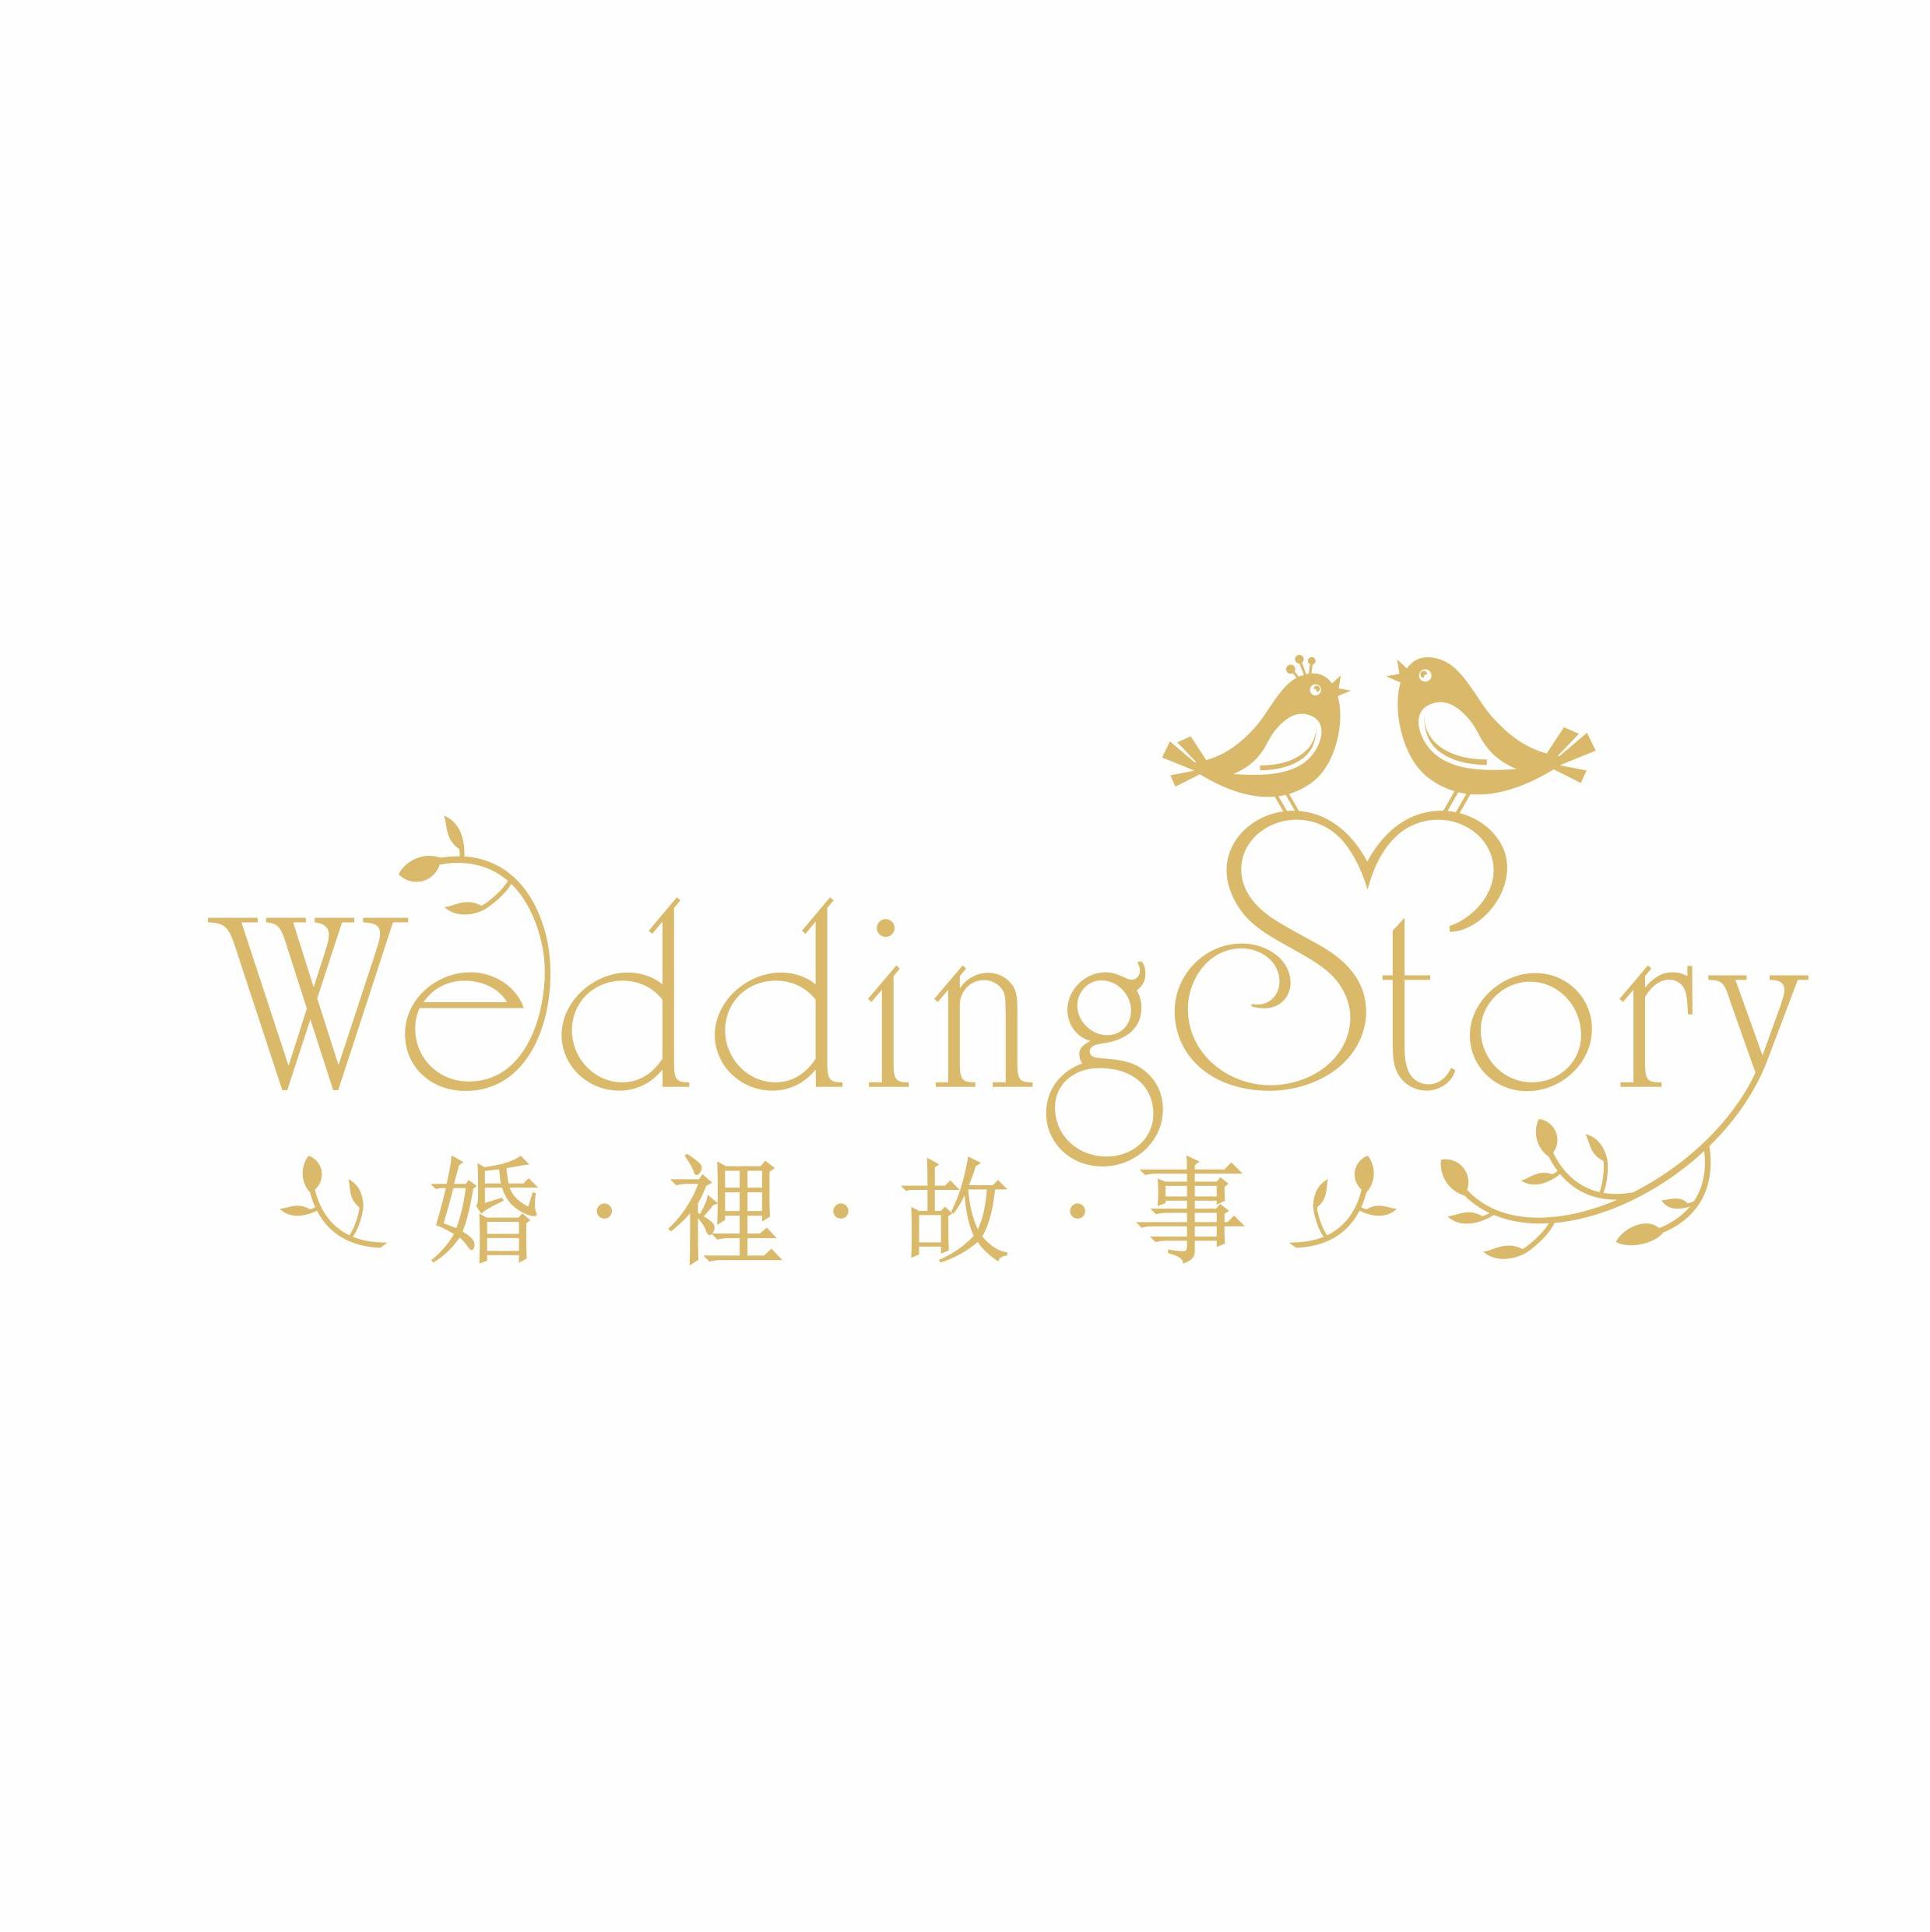 东莞婚礼故事文化传播有限公司